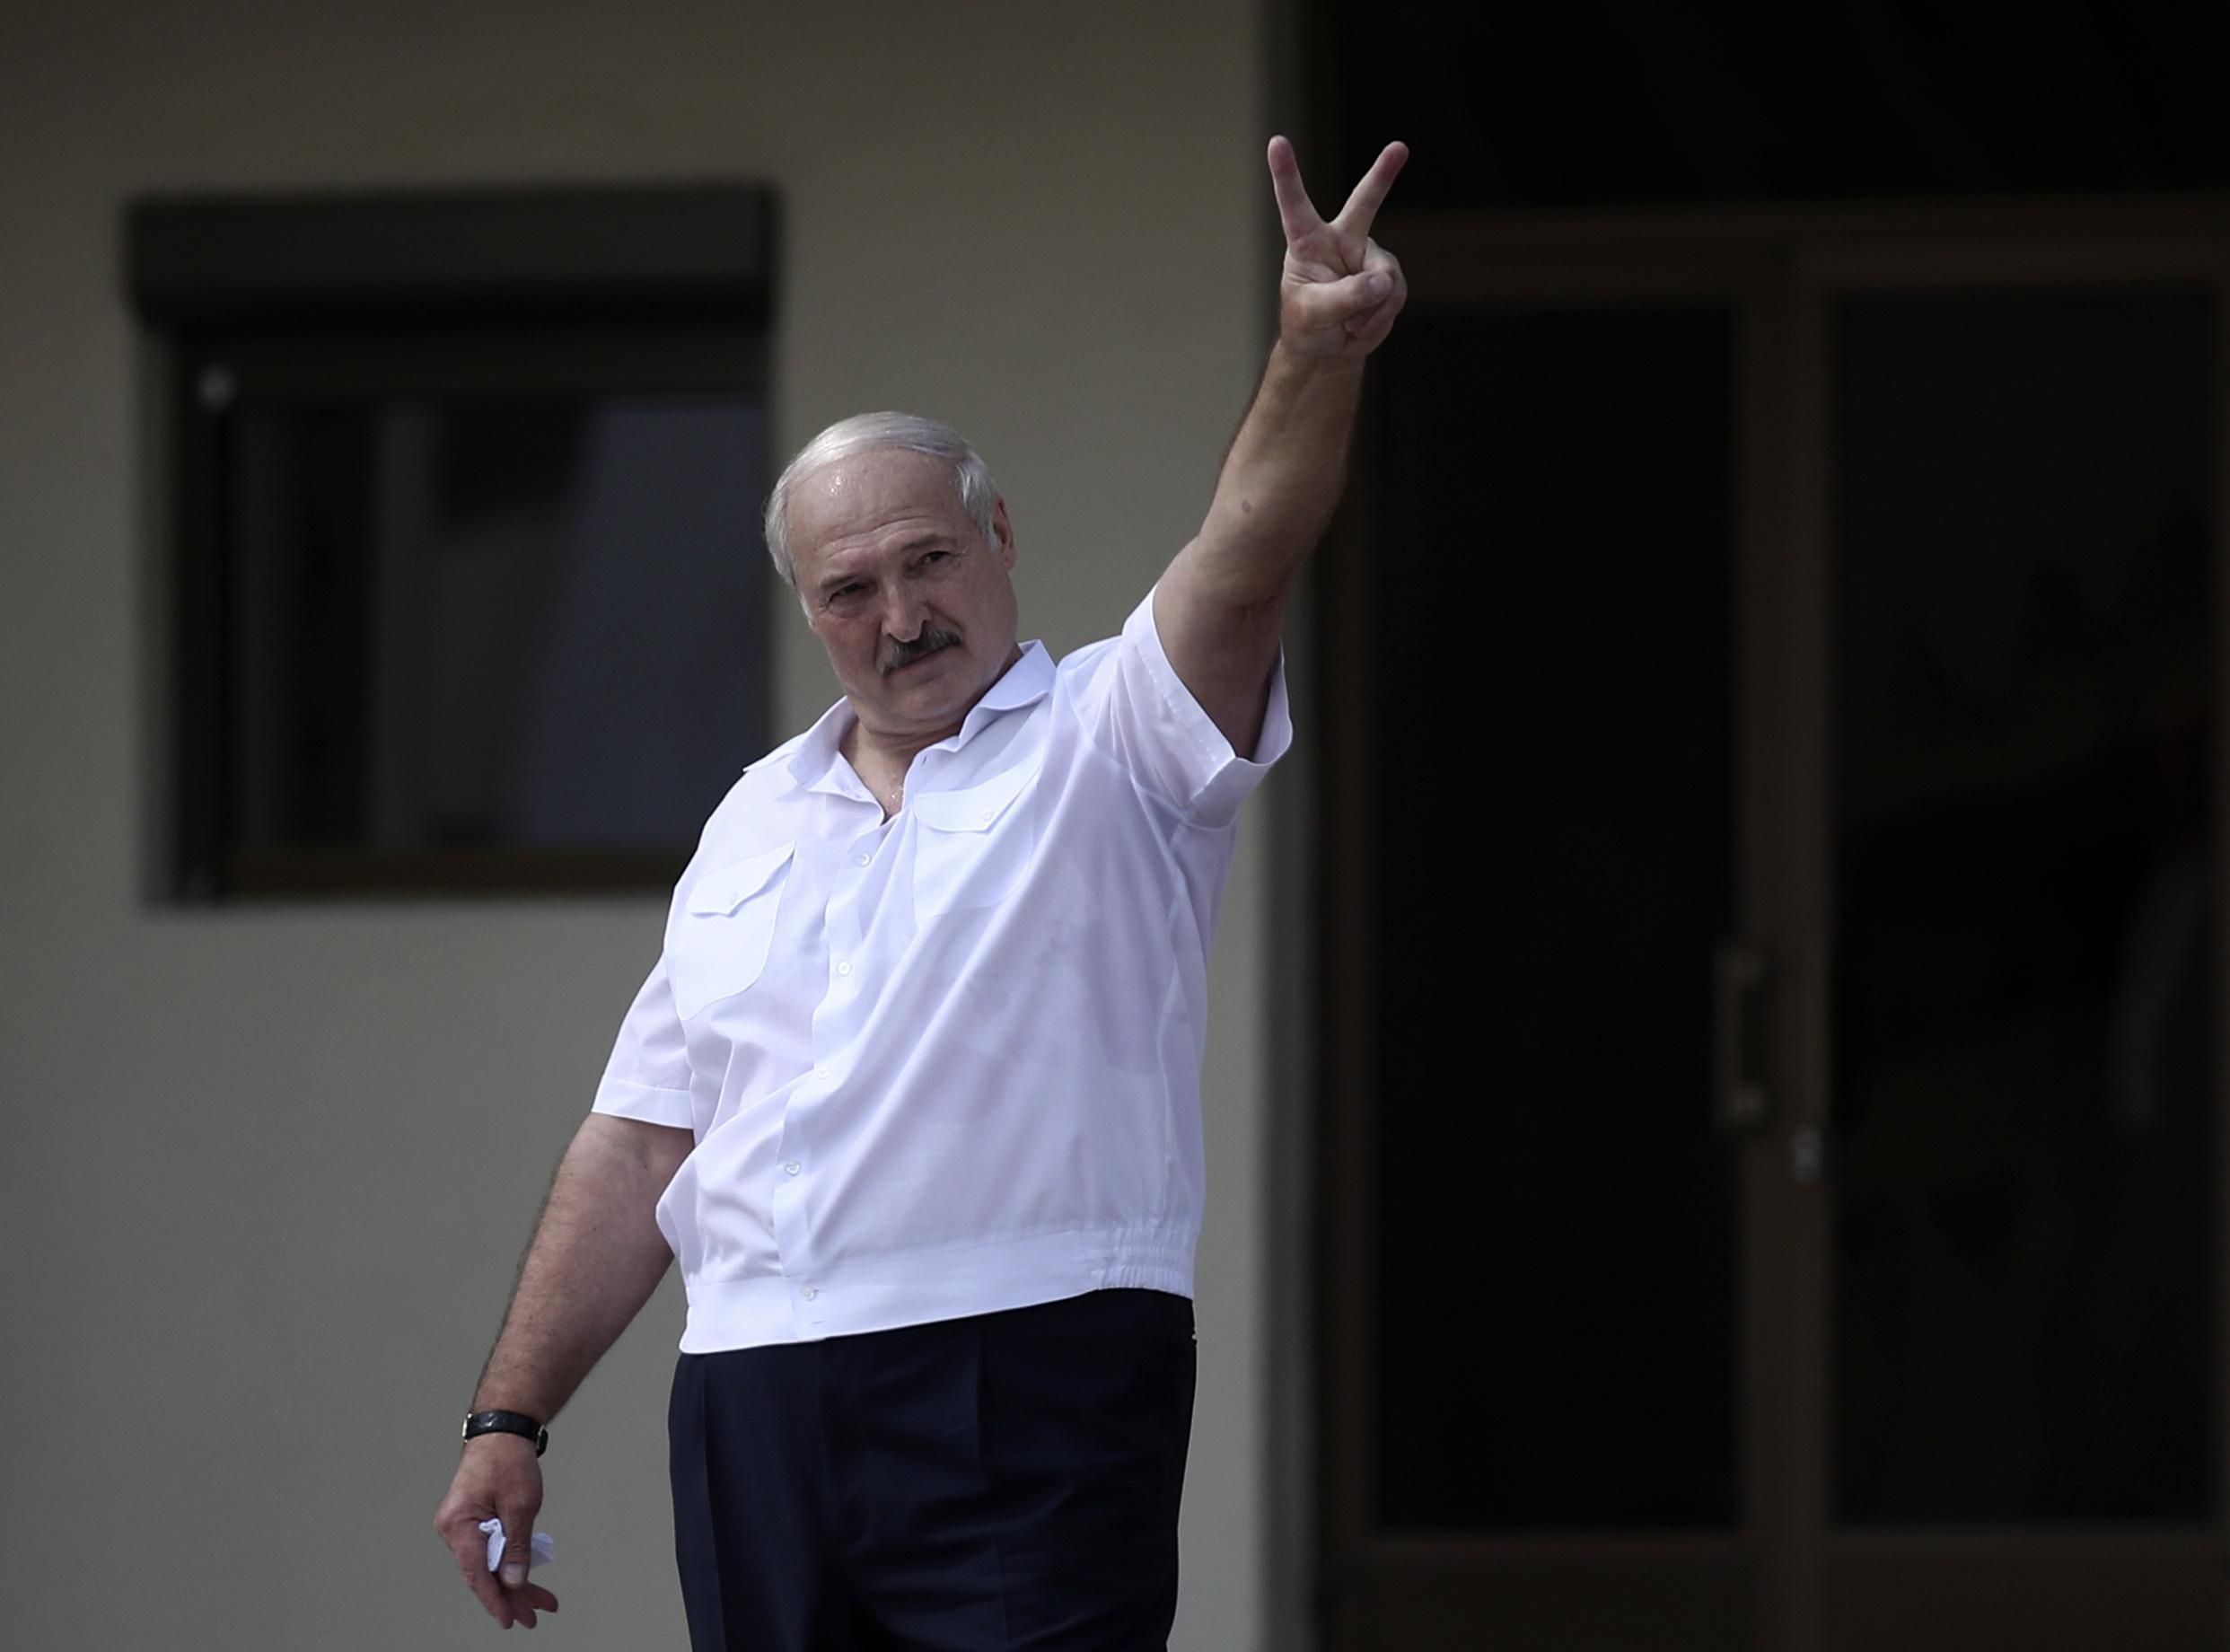 "Что теперь с ним будет": ведущие 24 канала разнесли новый бред от Лукашенко